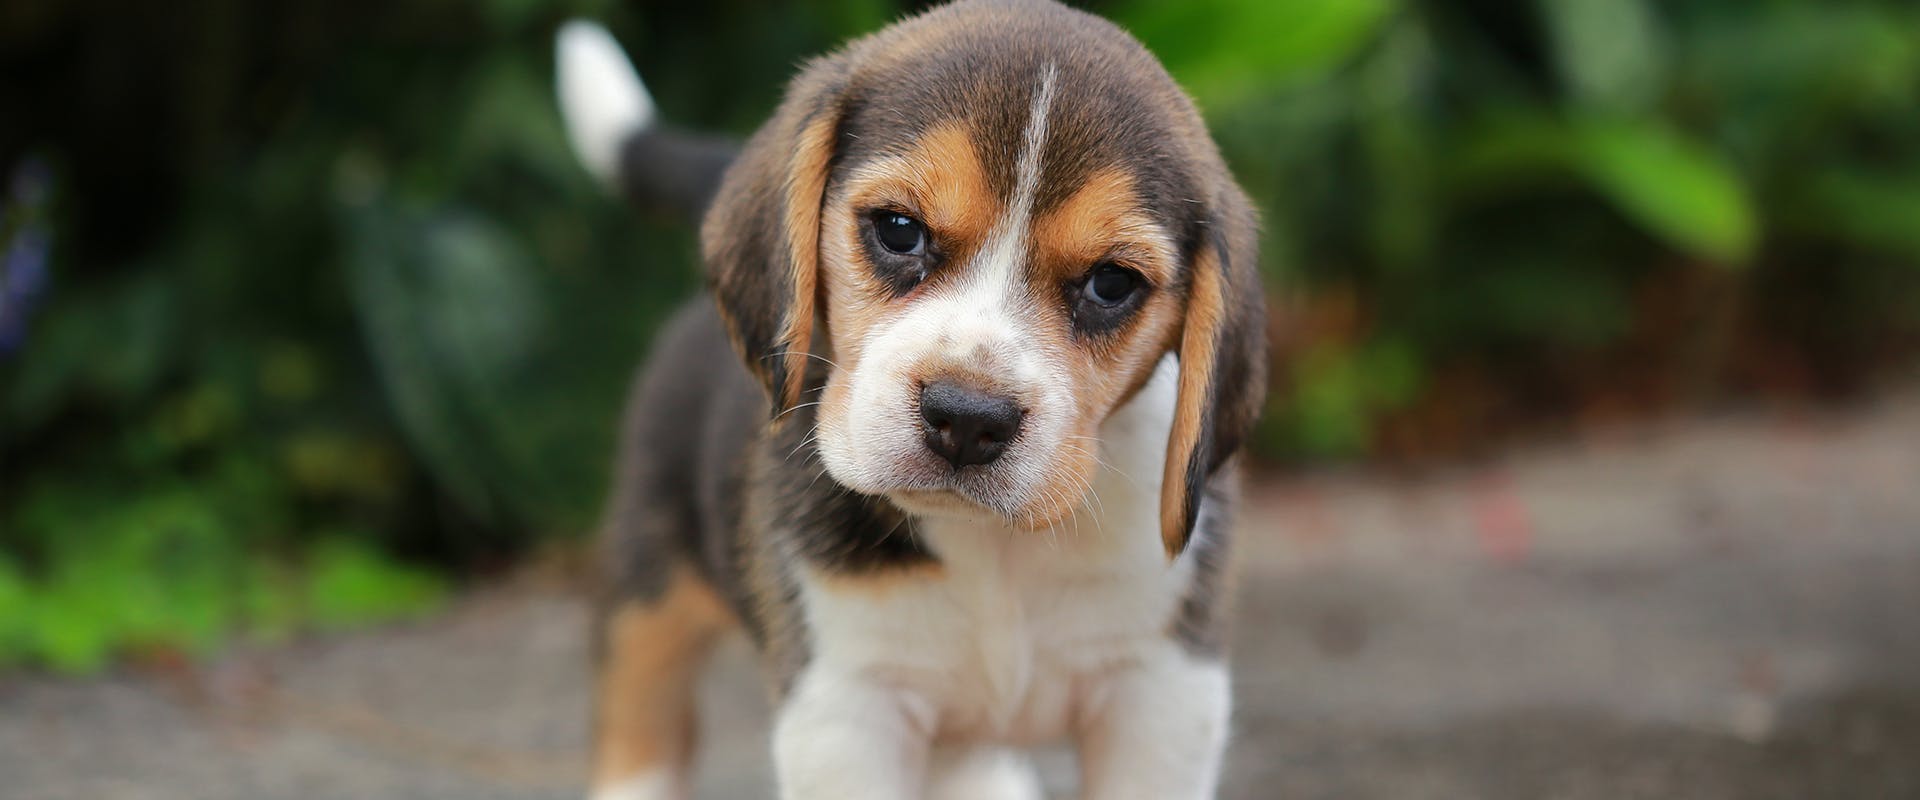 A small Beagle puppy